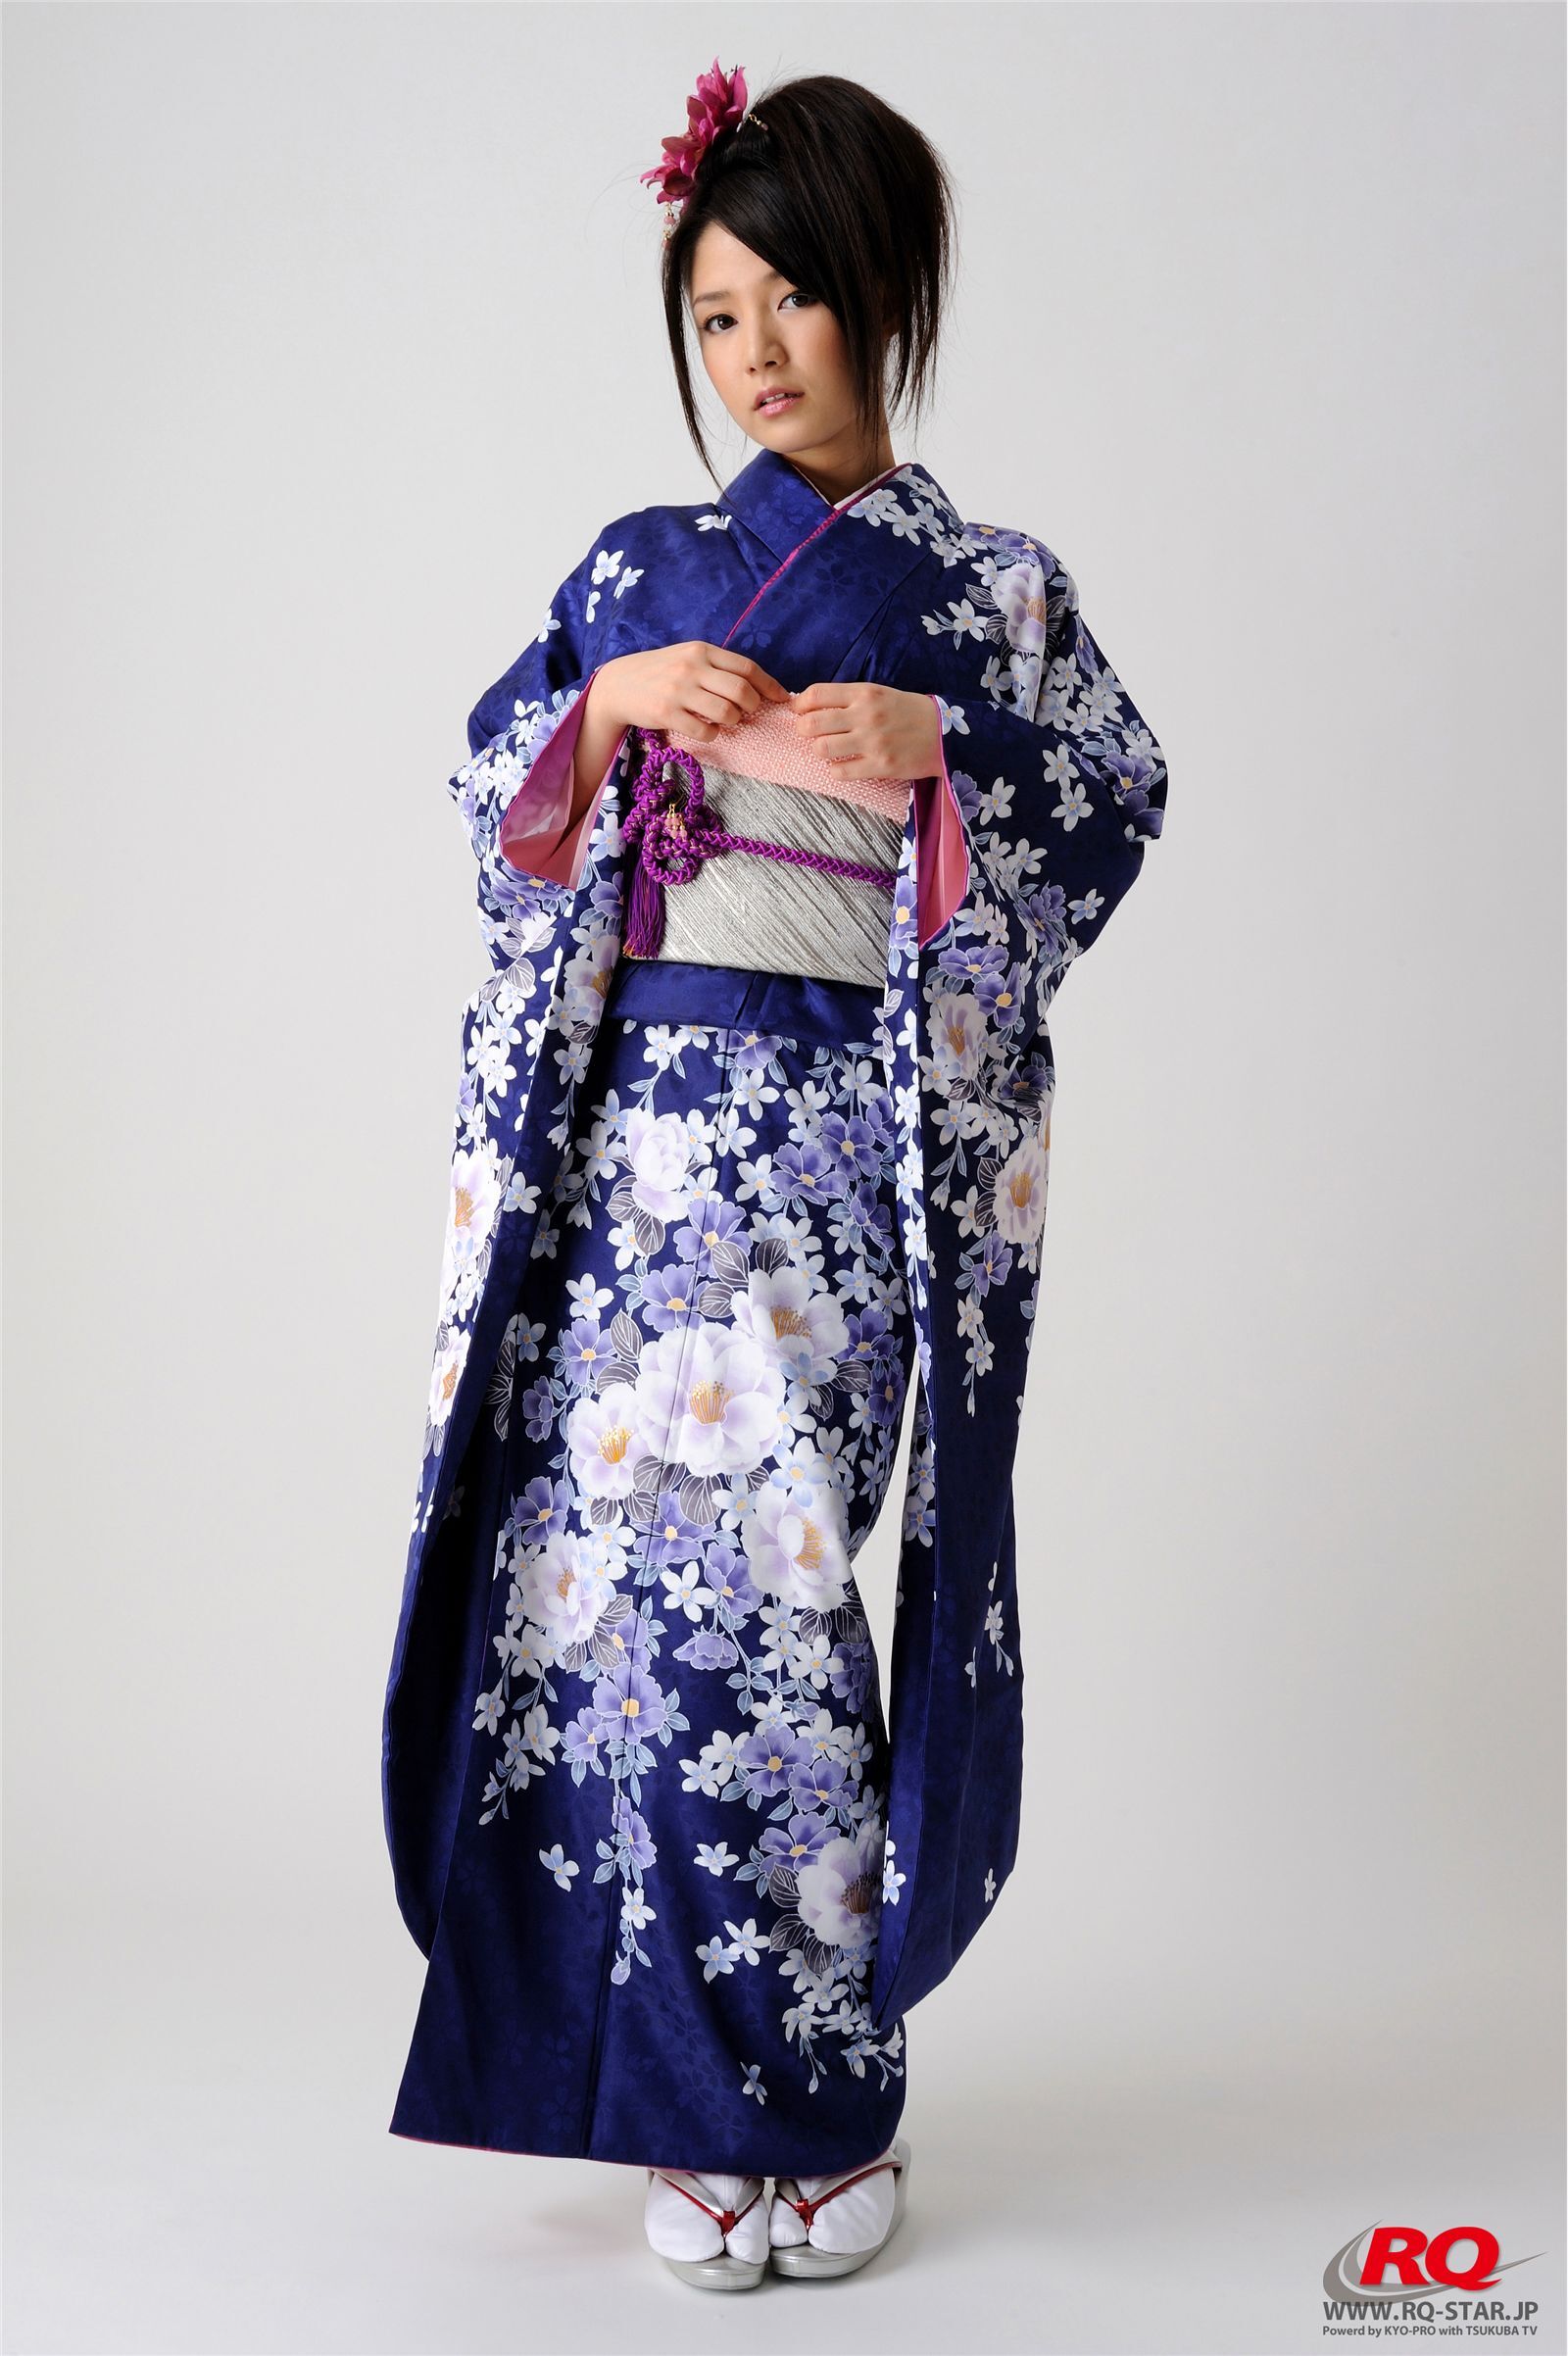 古崎瞳 謹賀新年 Kimono  rq-star NO.00068 日本性感美女